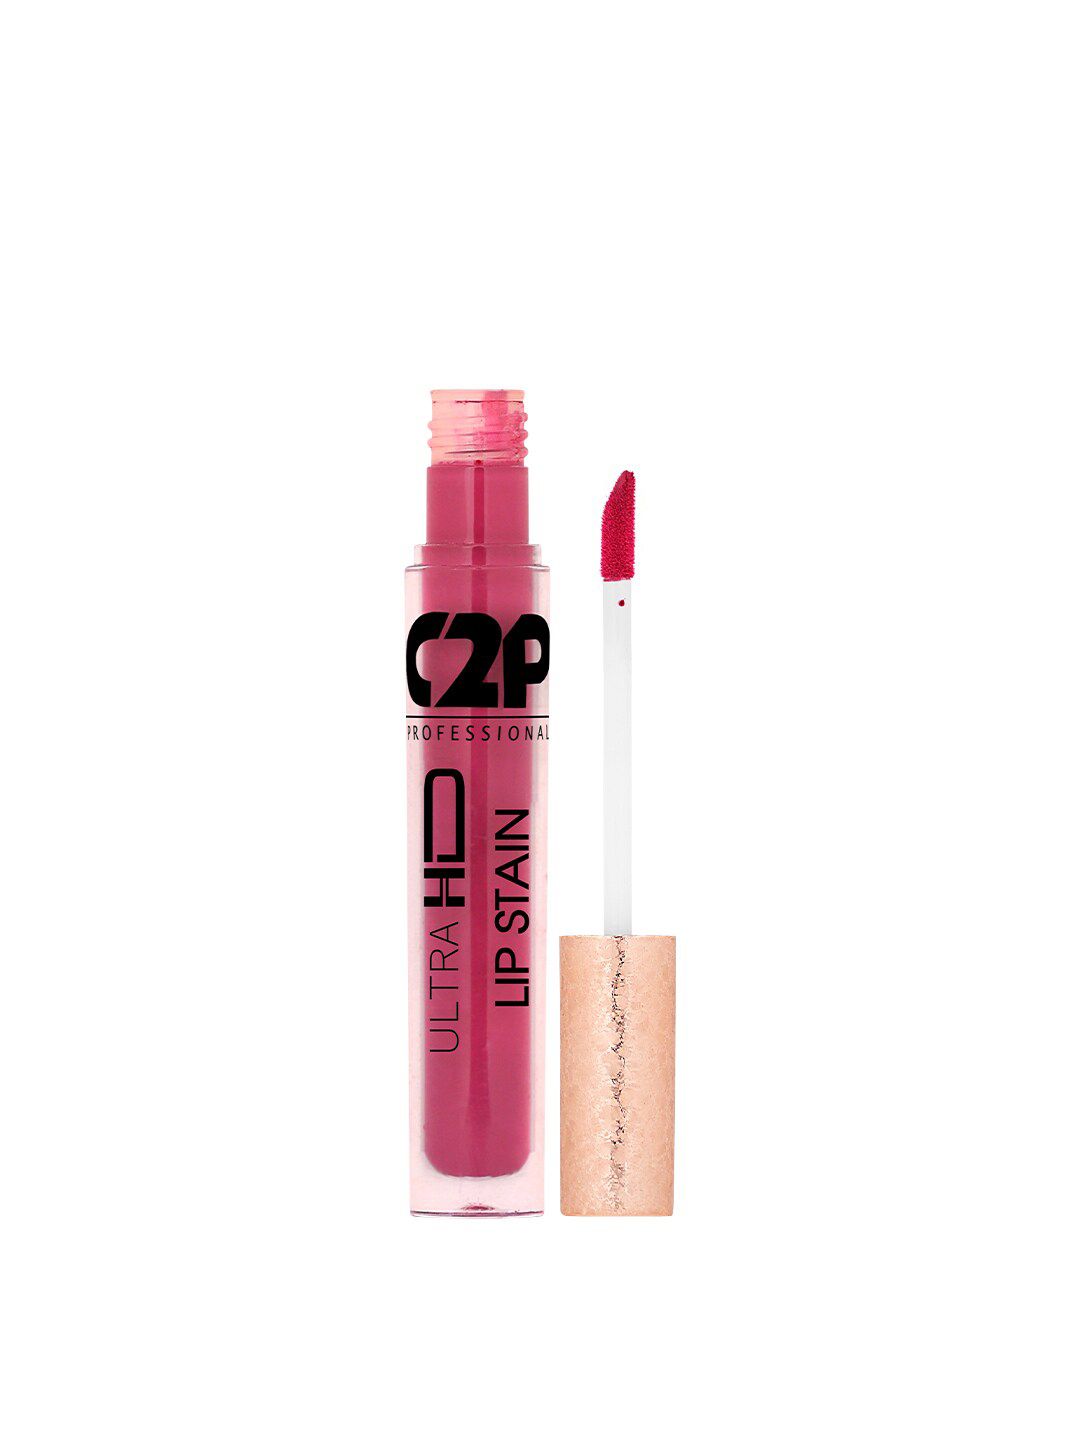 C2P PROFESSIONAL MAKEUP Lip Stain Liquid Lipstick - Mulberry Craze 02 5 ml Price in India